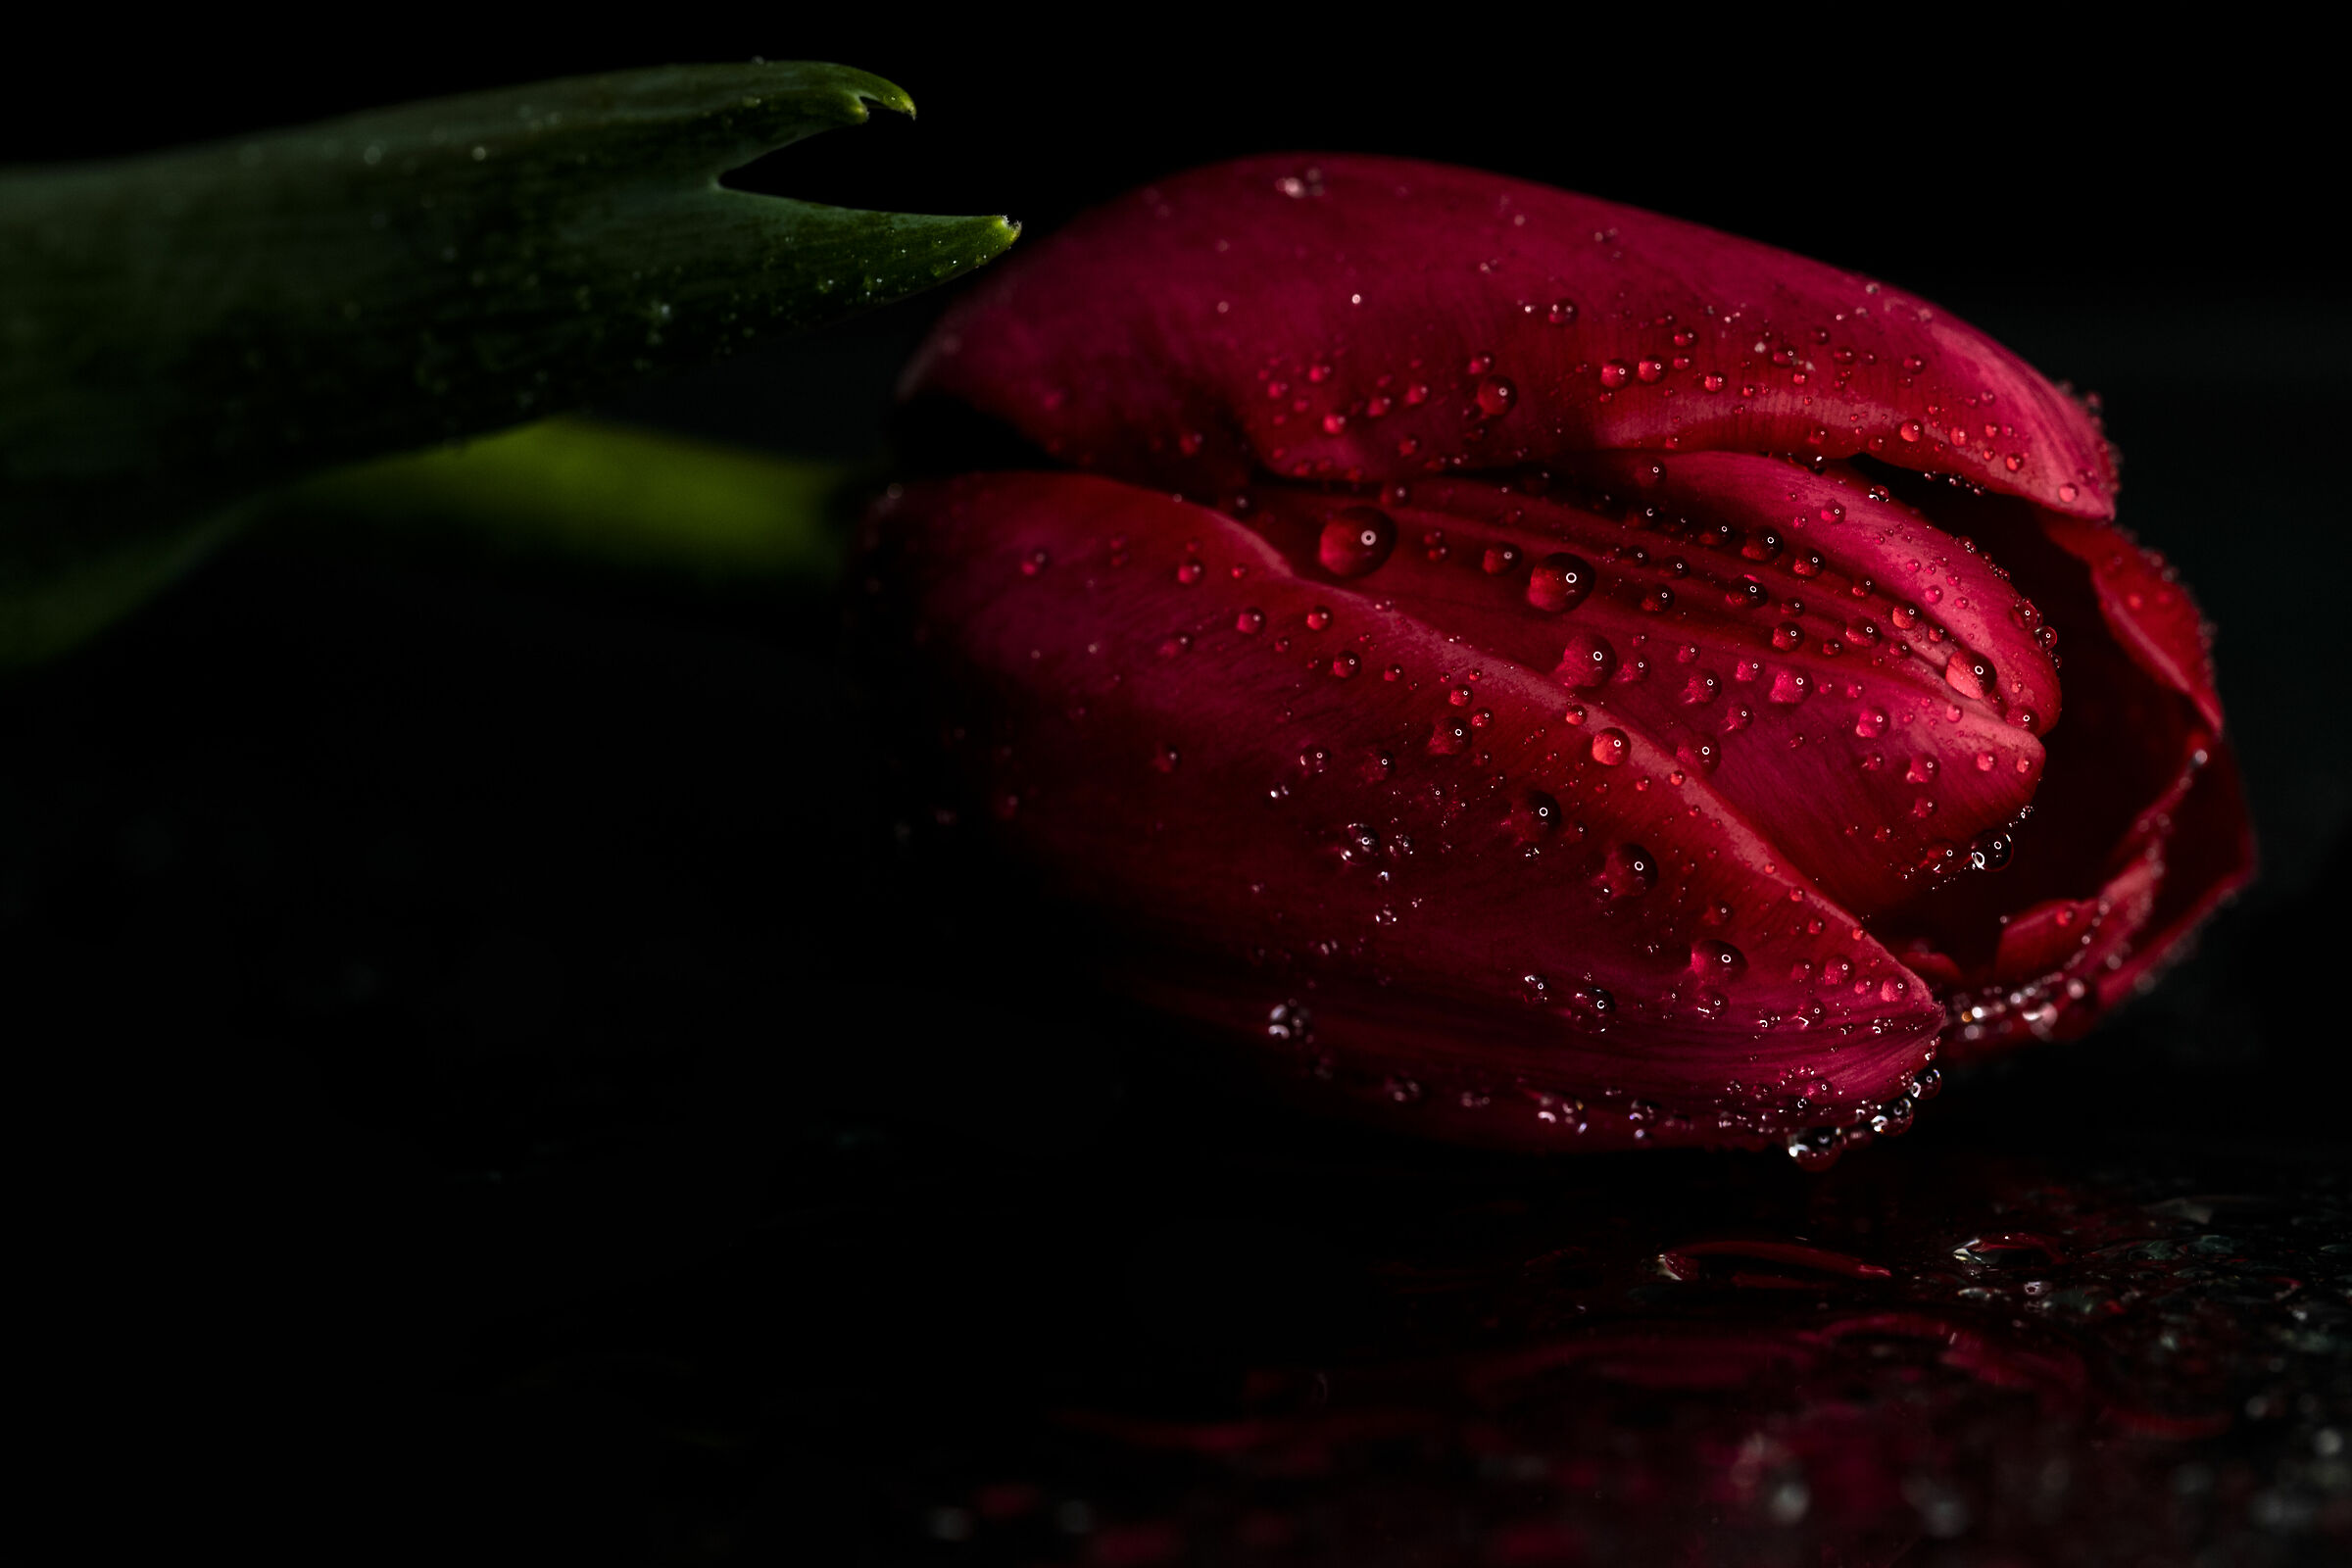 "Tulip in the Rain"...